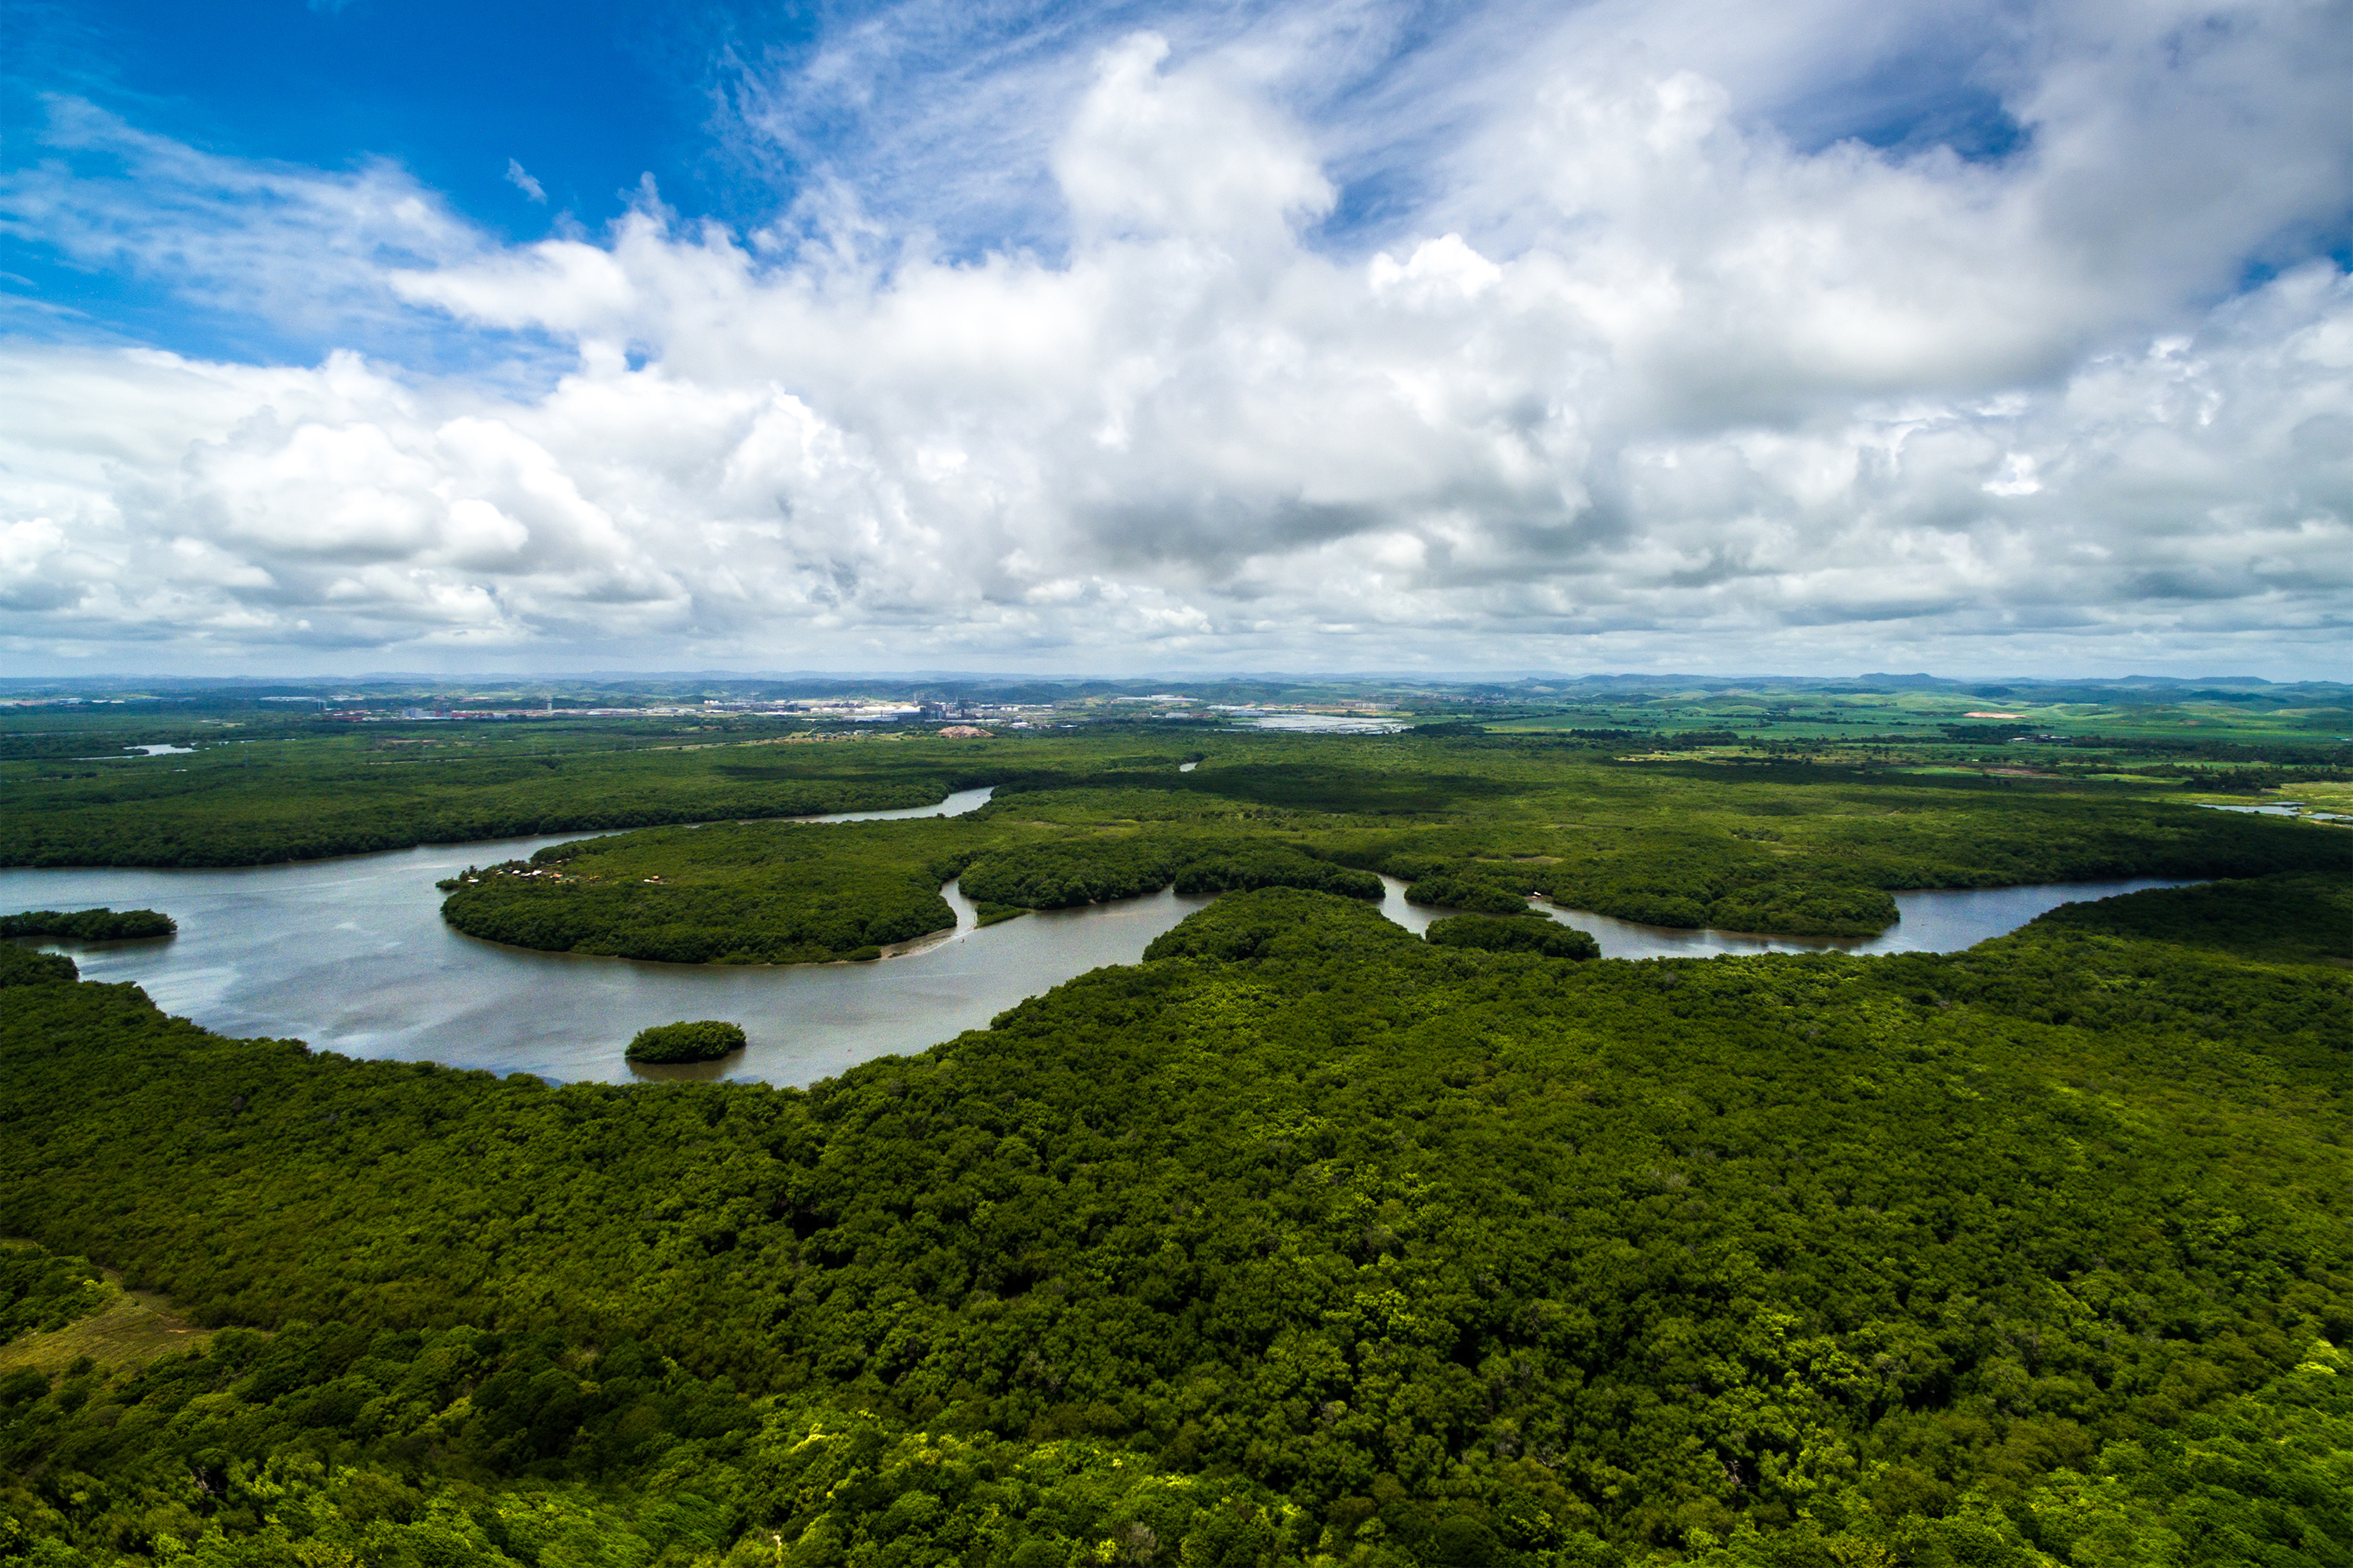 A Amazônia está se aproximando de um ponto sem retorno, mas não é tarde demais